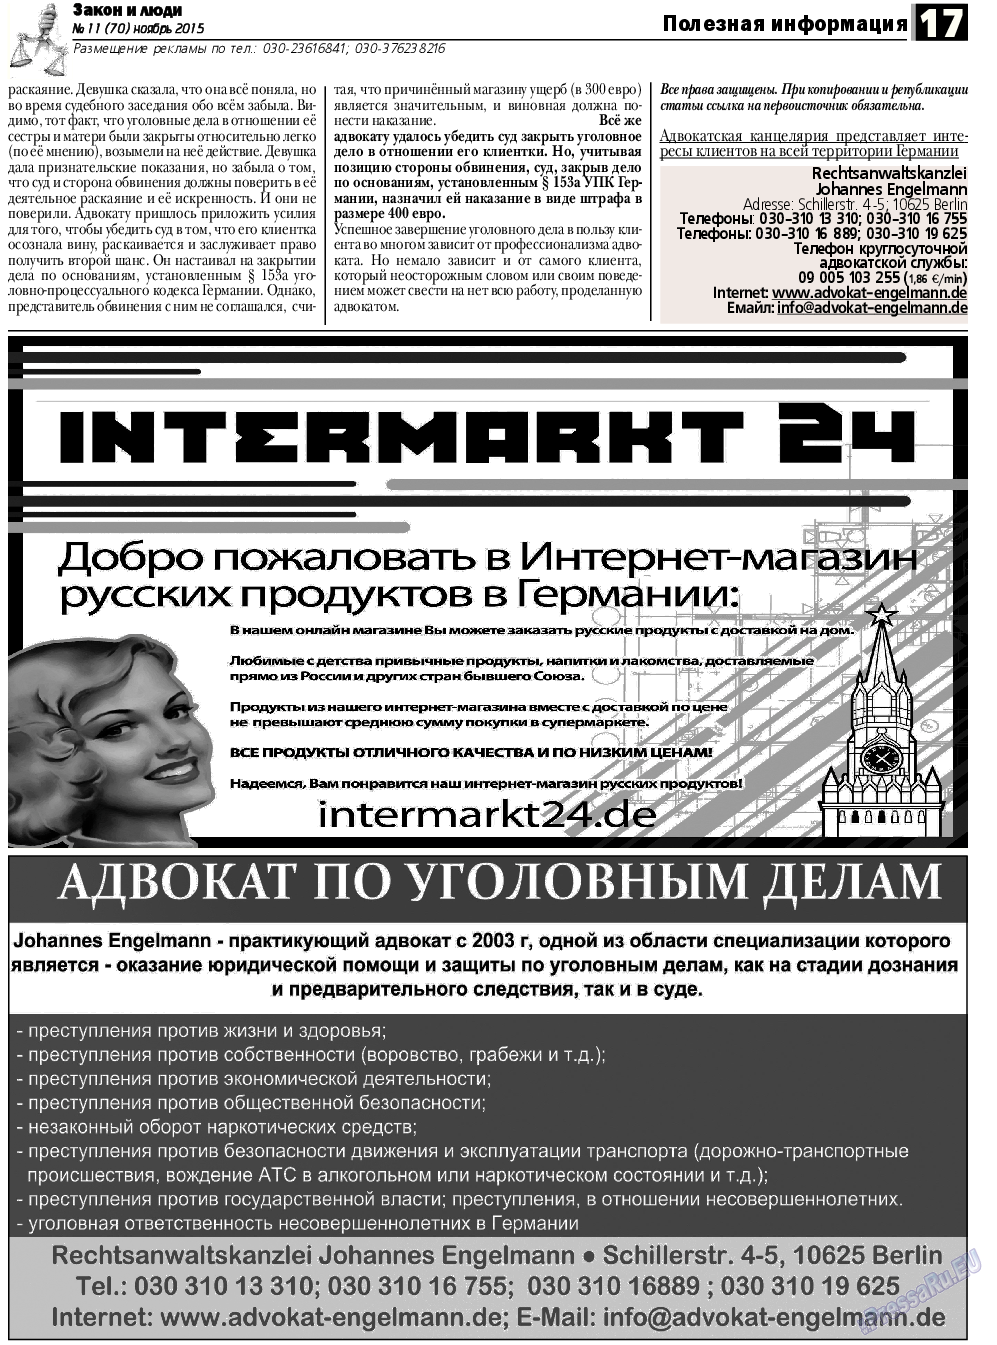 Закон и люди, газета. 2015 №11 стр.17